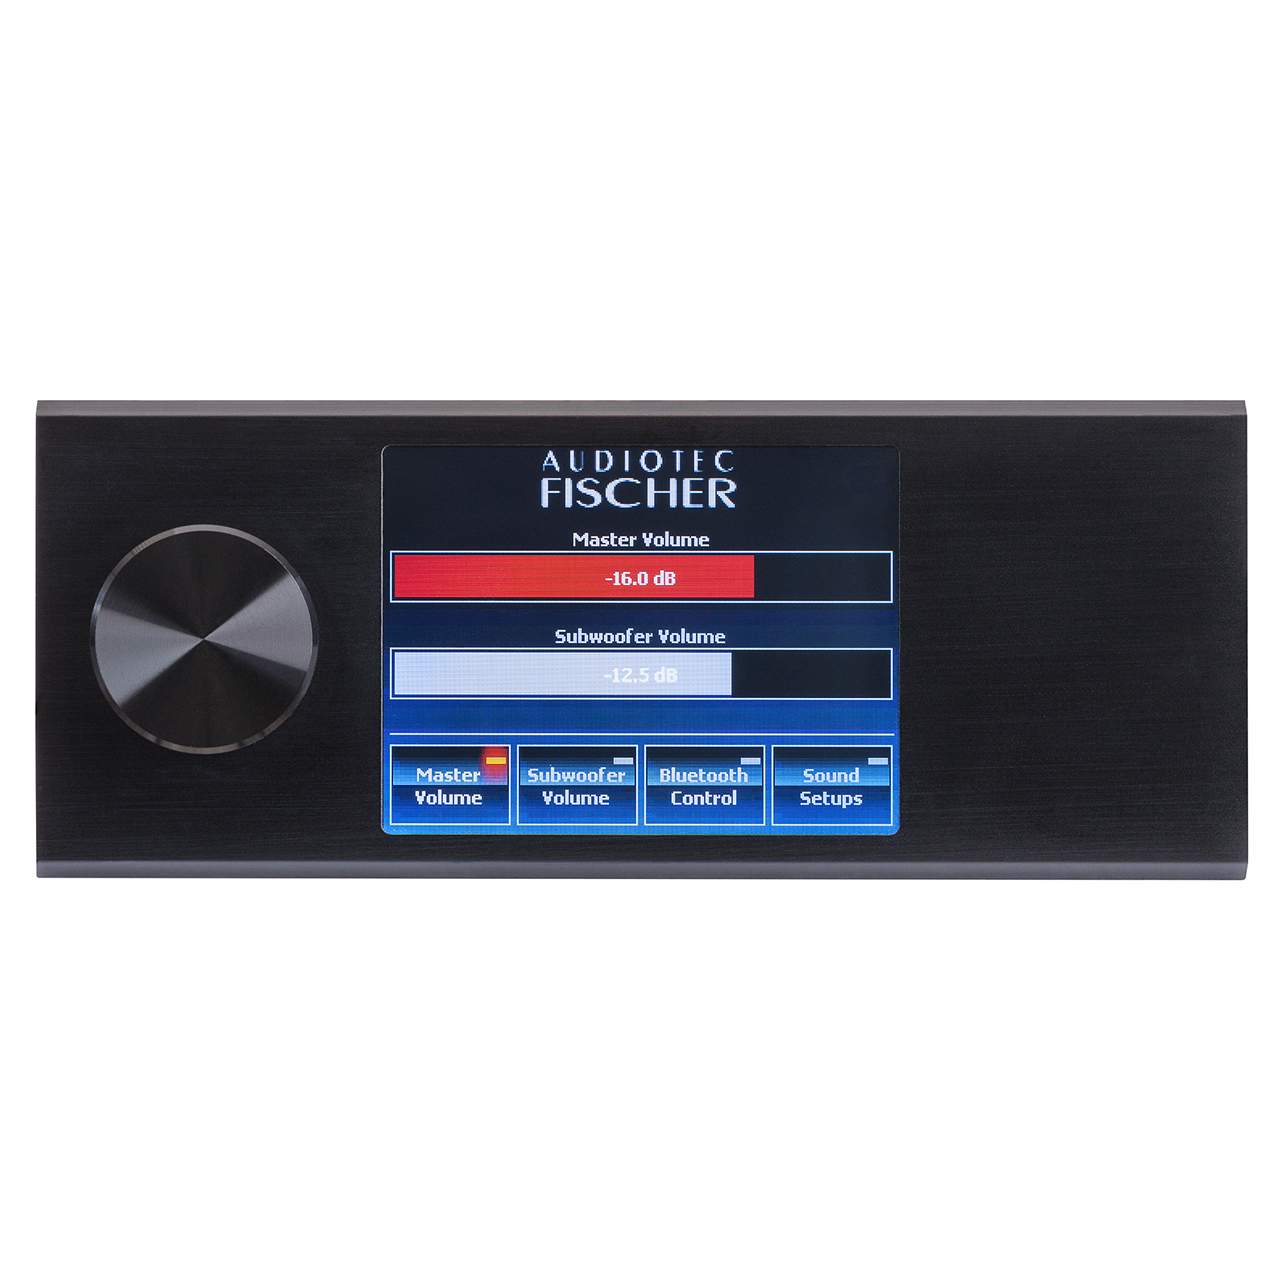 DIRECTOR - Display Remote Control | Audiotec Fischer